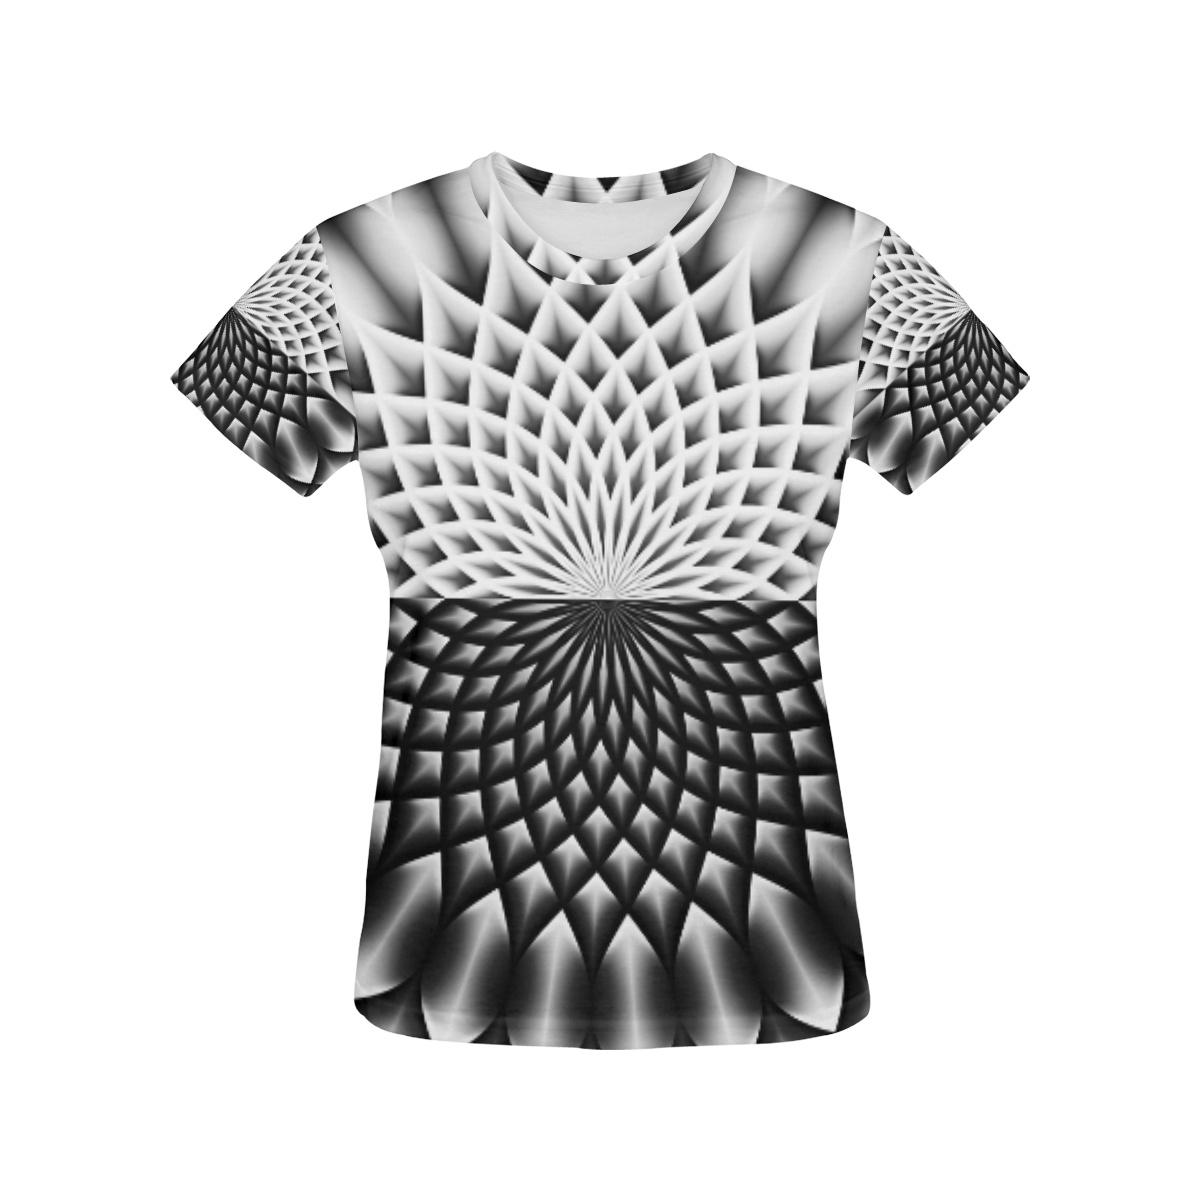 Lotus Flower Mandala Black Grey White All Over Print T-Shirt for Women (USA Size) (Model T40)